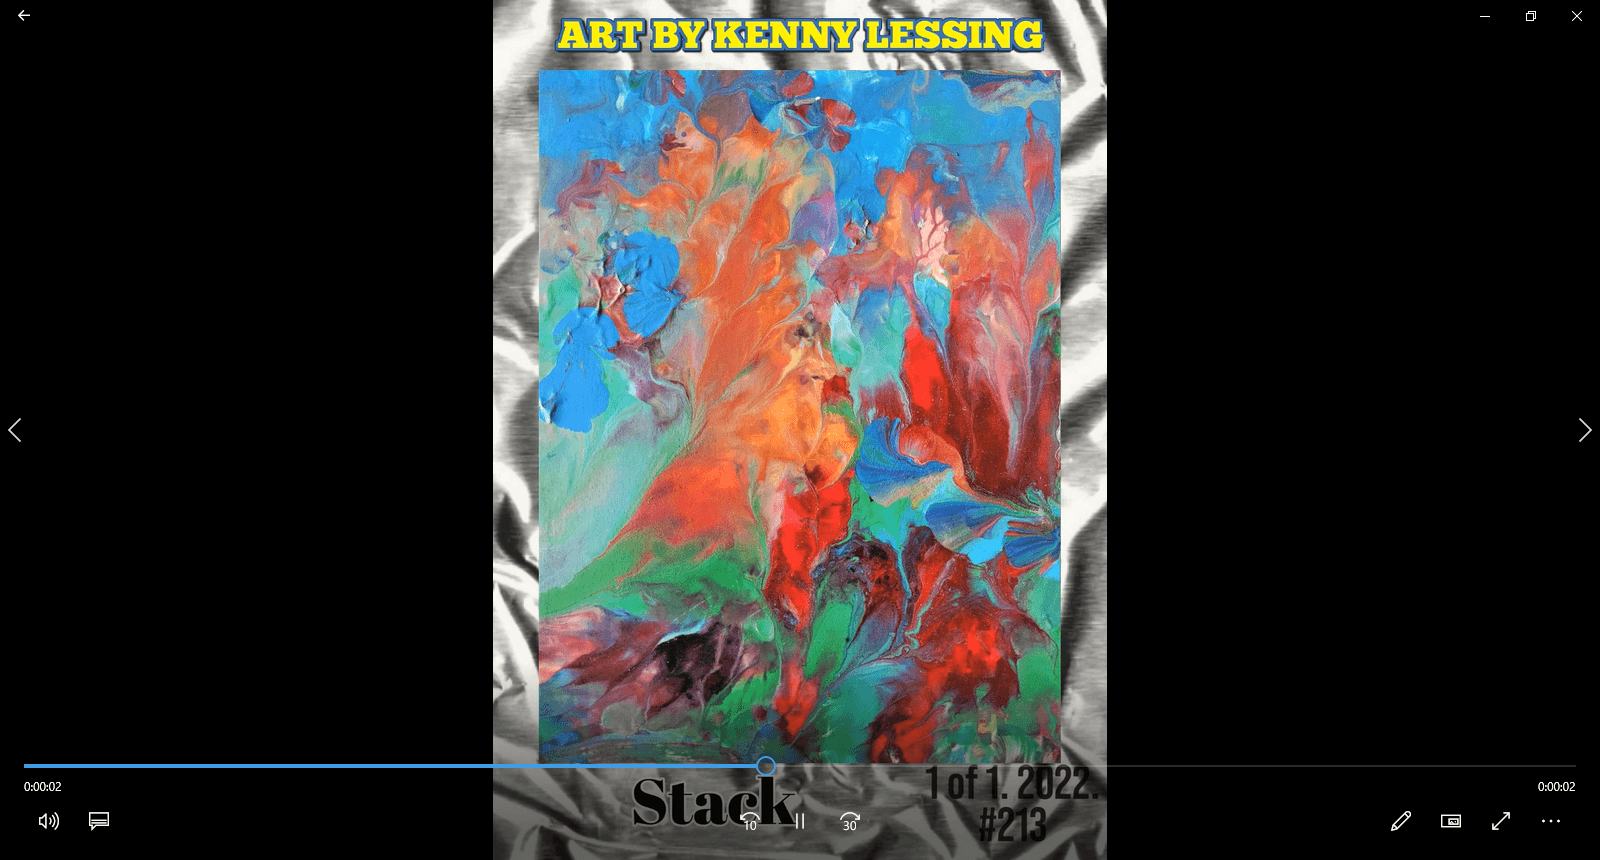 Stack - 2022 #ArtByKennyLessing 1 of 1 card #213